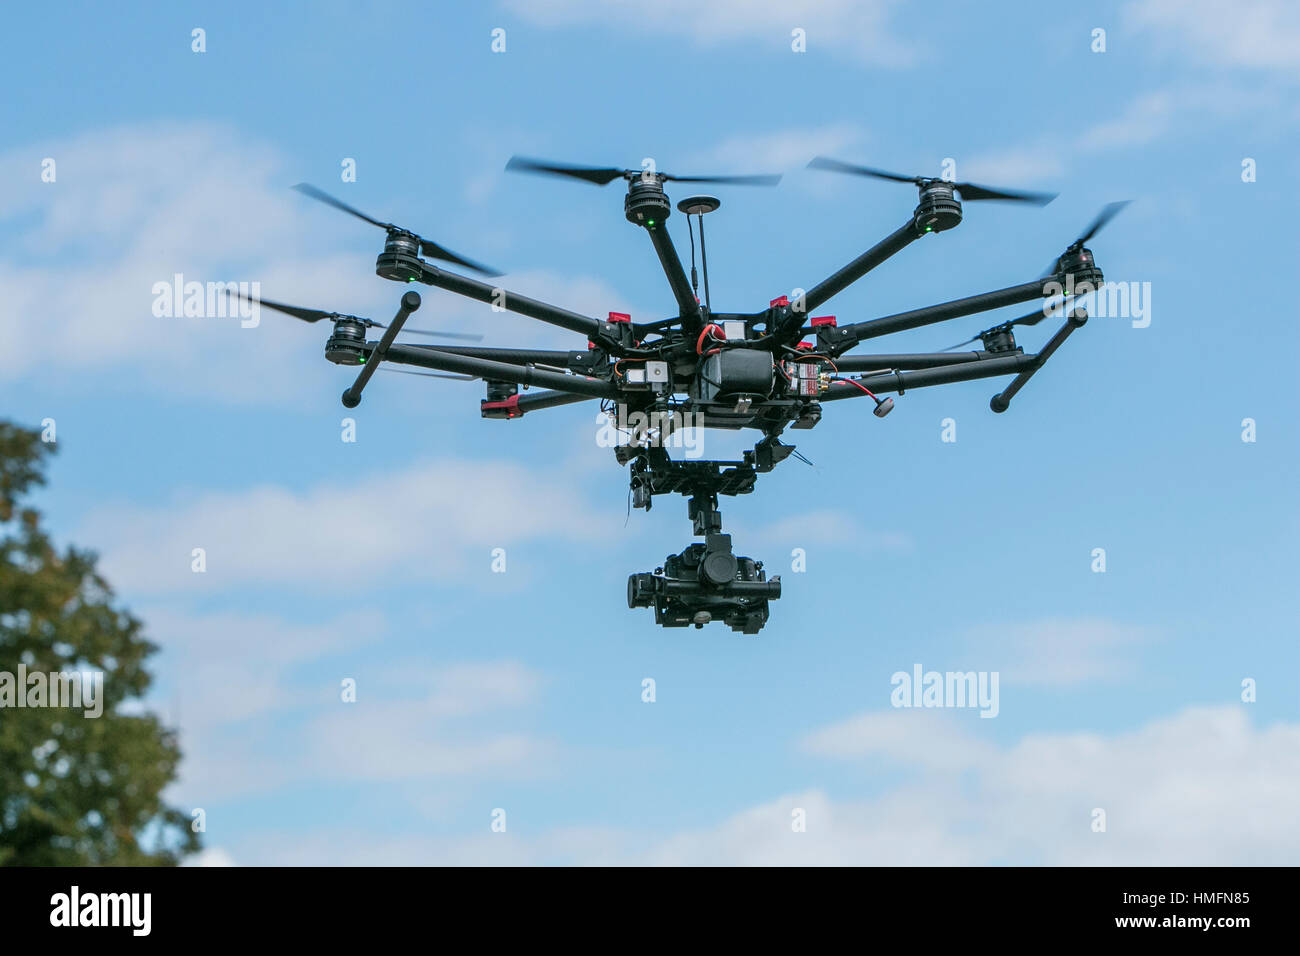 Una cámara drone en vuelo contra un cielo azul Foto de stock